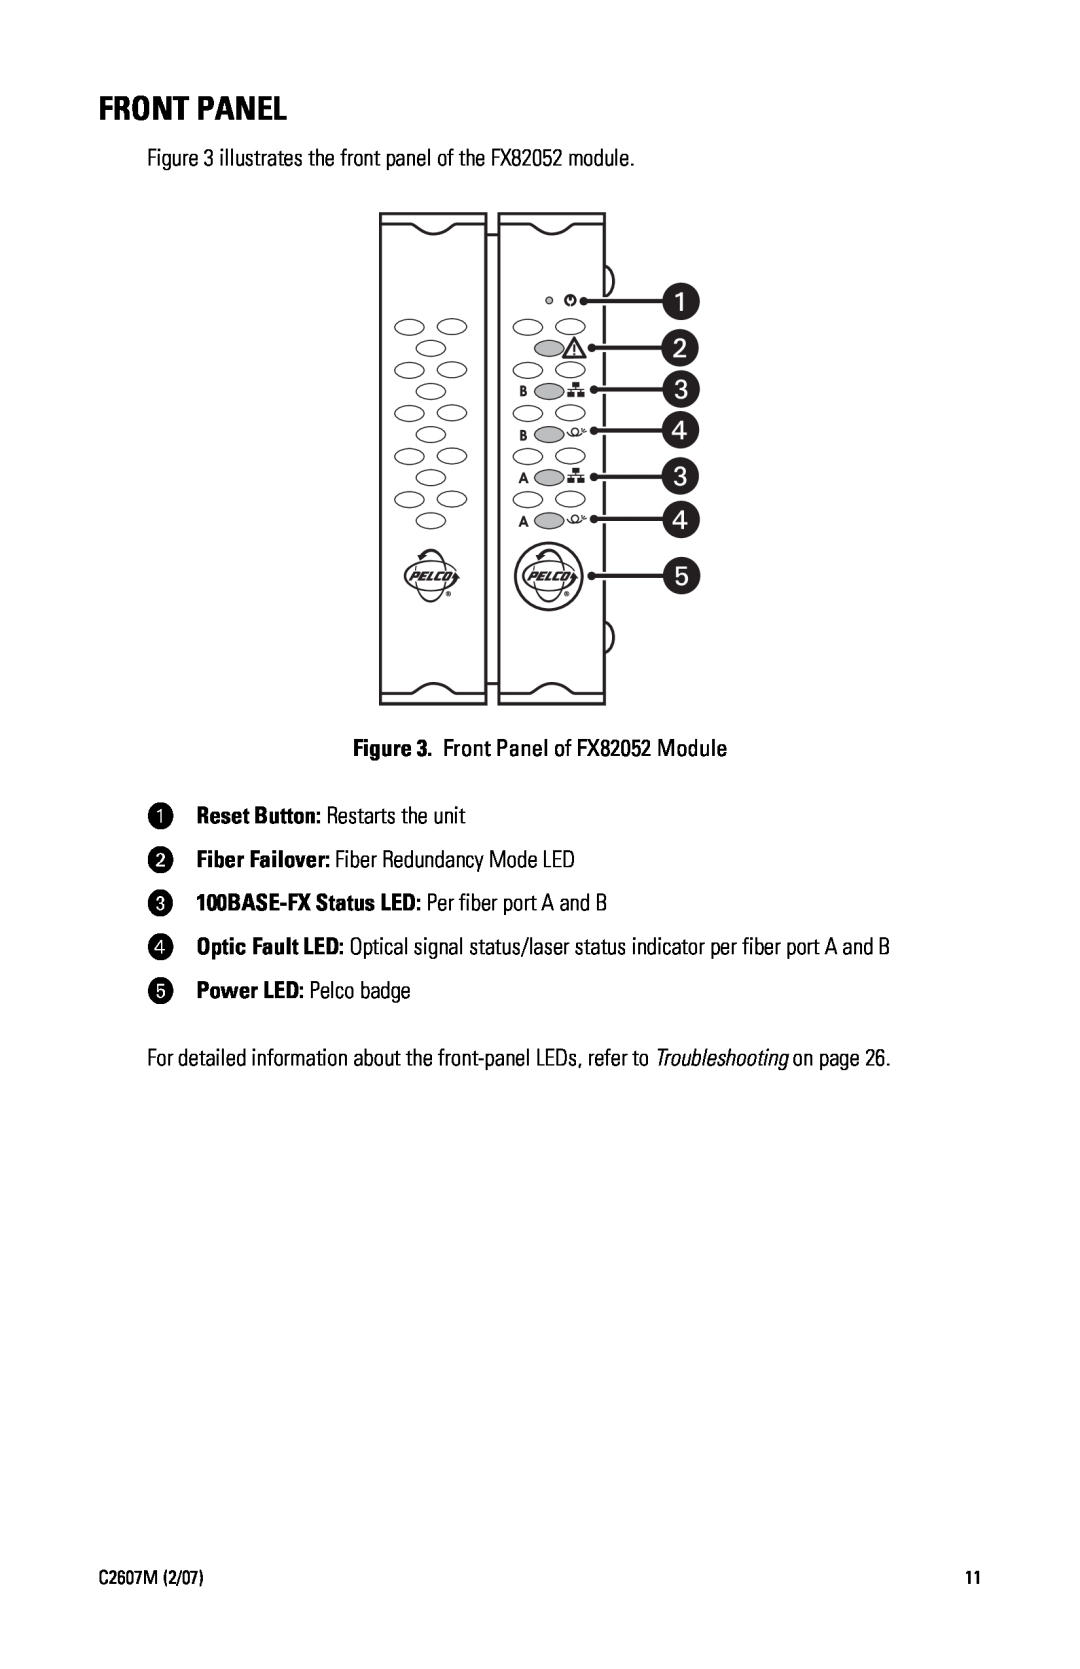 Pelco 100BASE-TX manual Front Panel, ï 100BASE-FX Status LED Per fiber port A and B, ó Power LED Pelco badge 